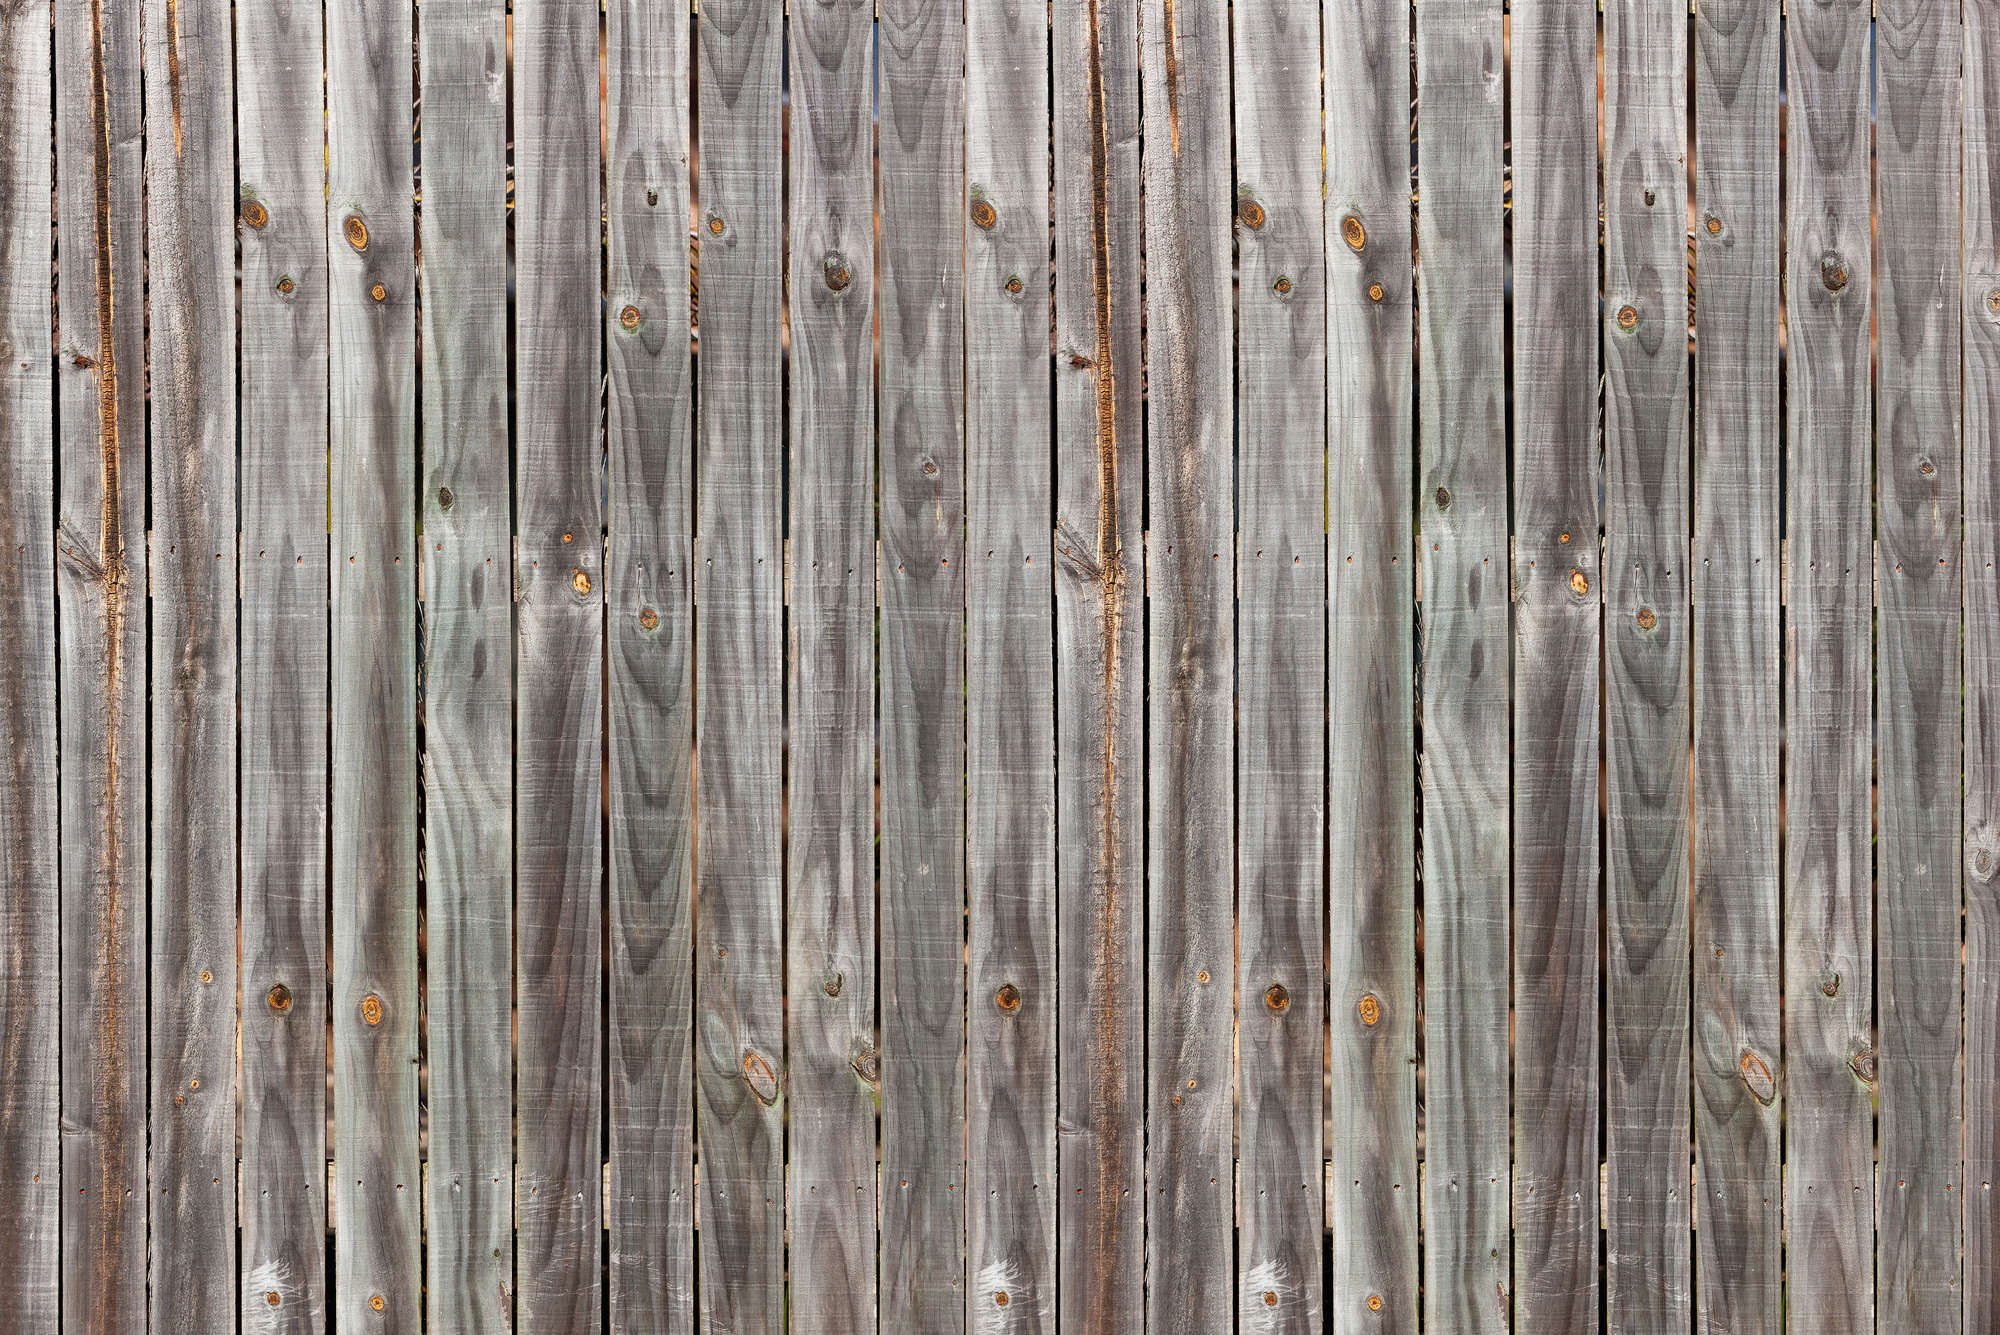             Bois foncé - Mur de planches rustique, clôture de planches usées par le temps
        